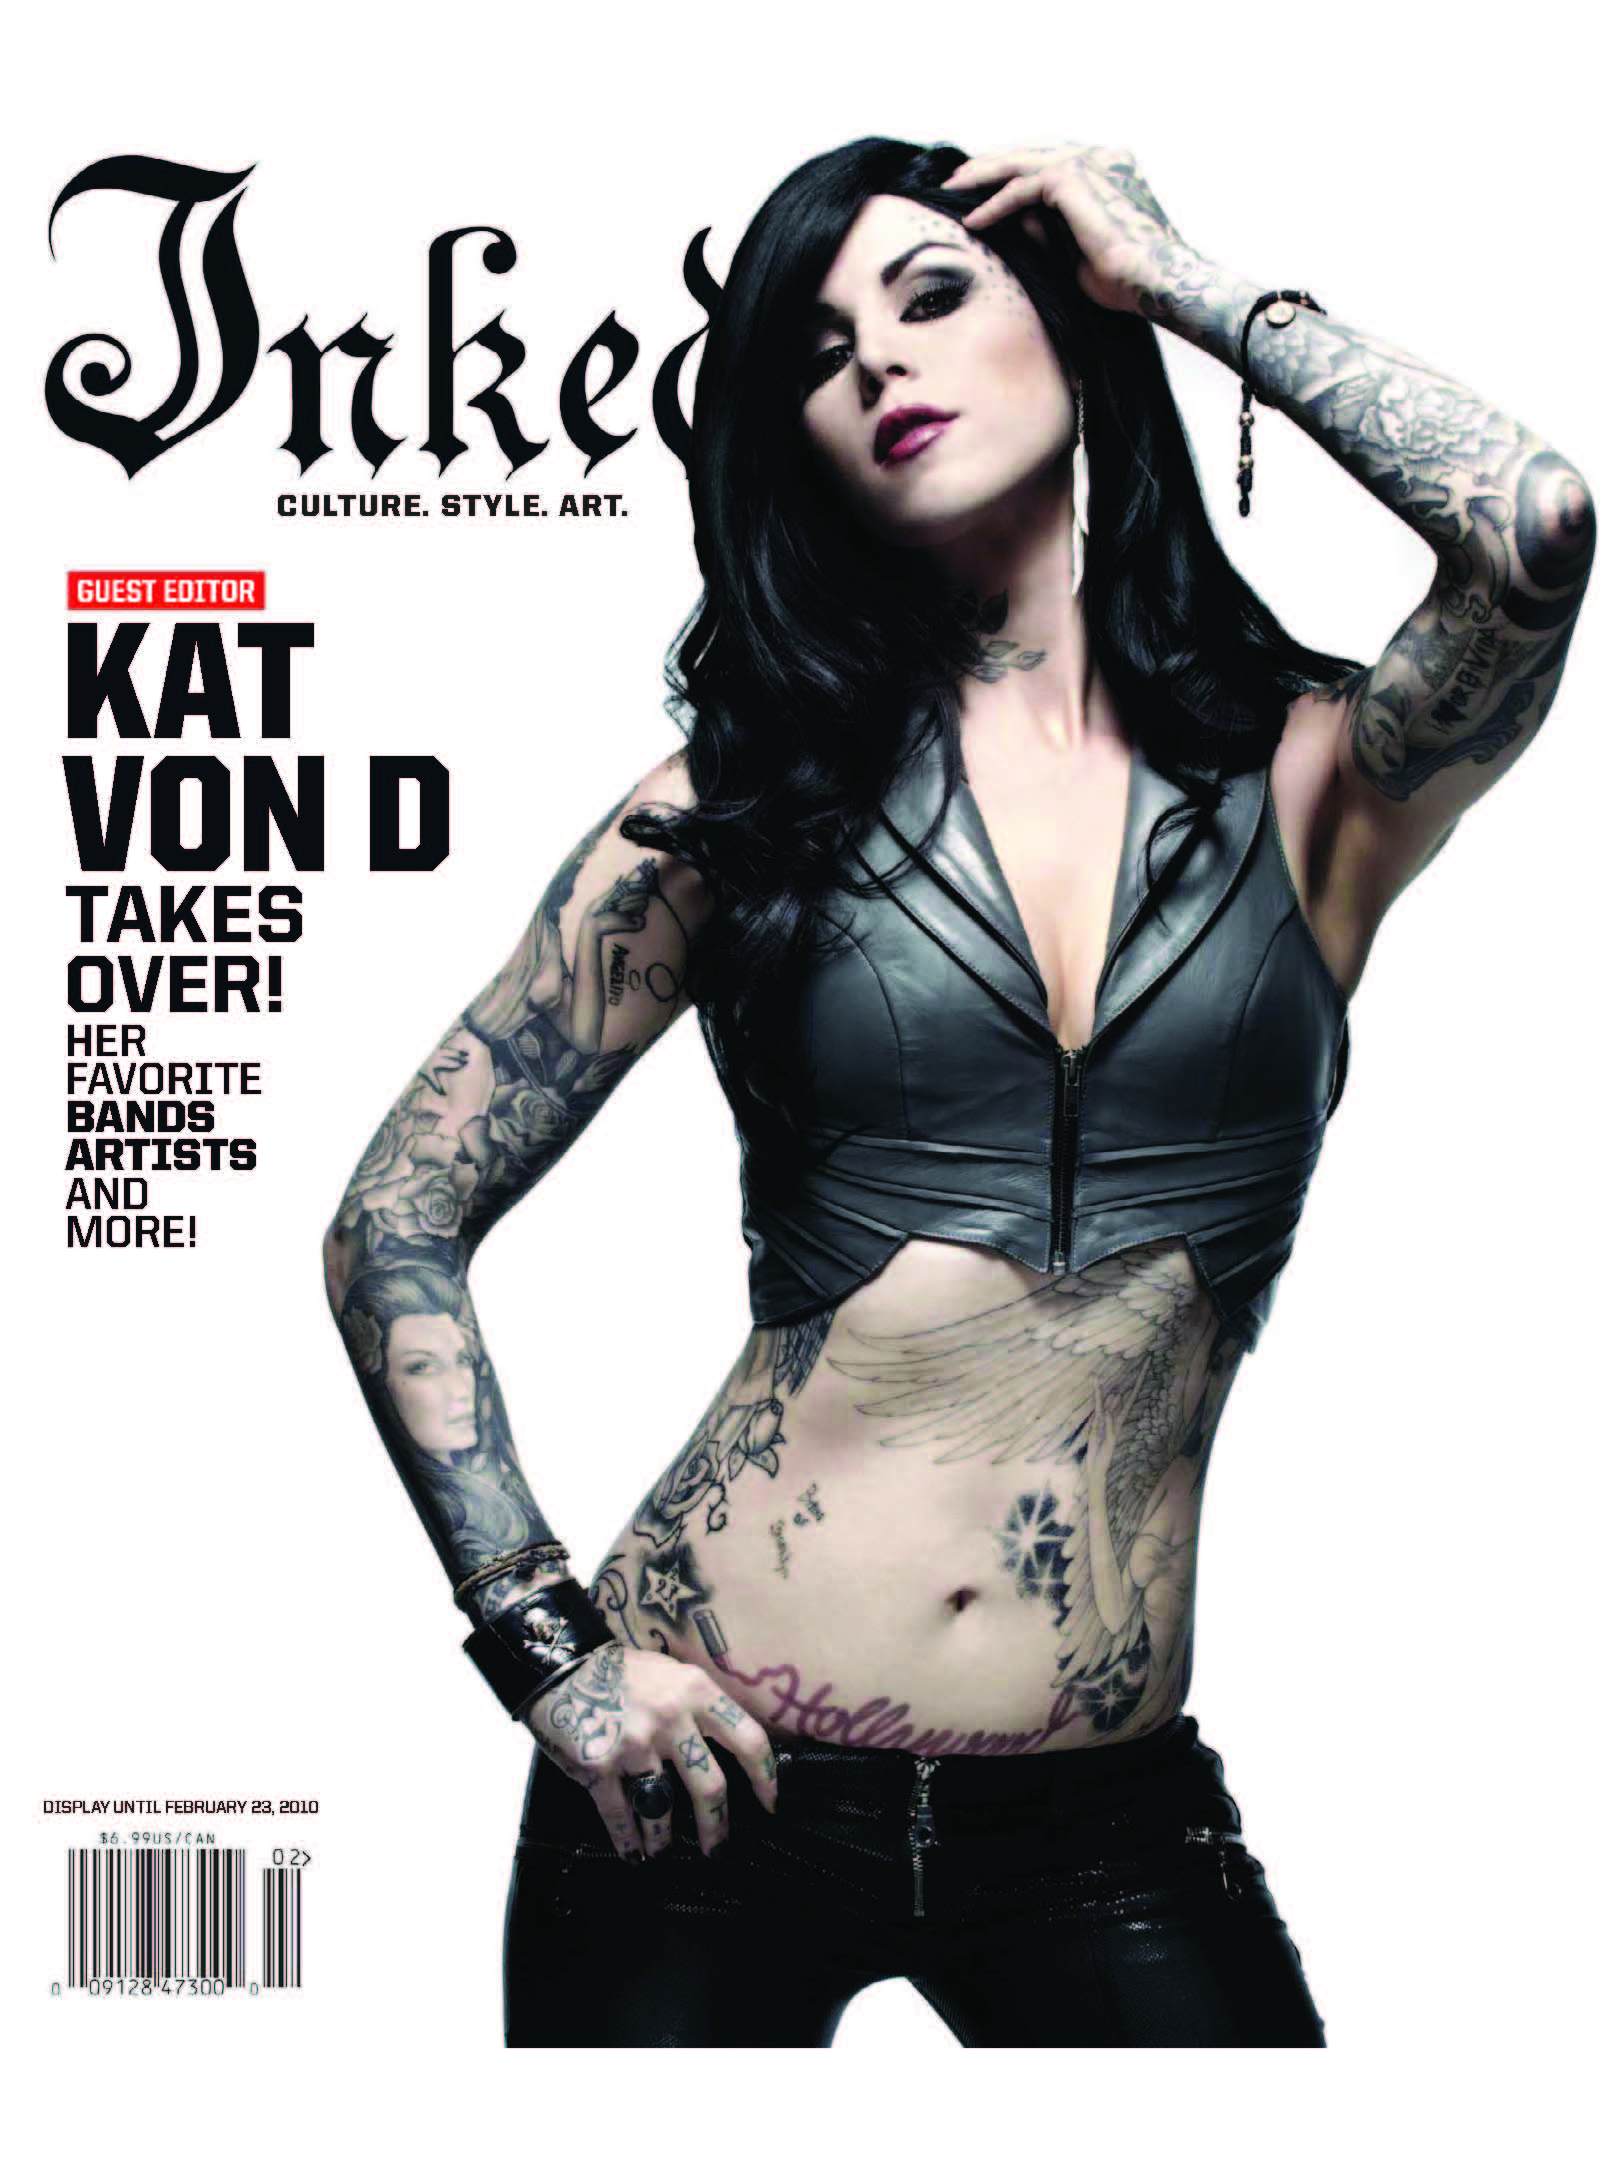 "Inked" magazine